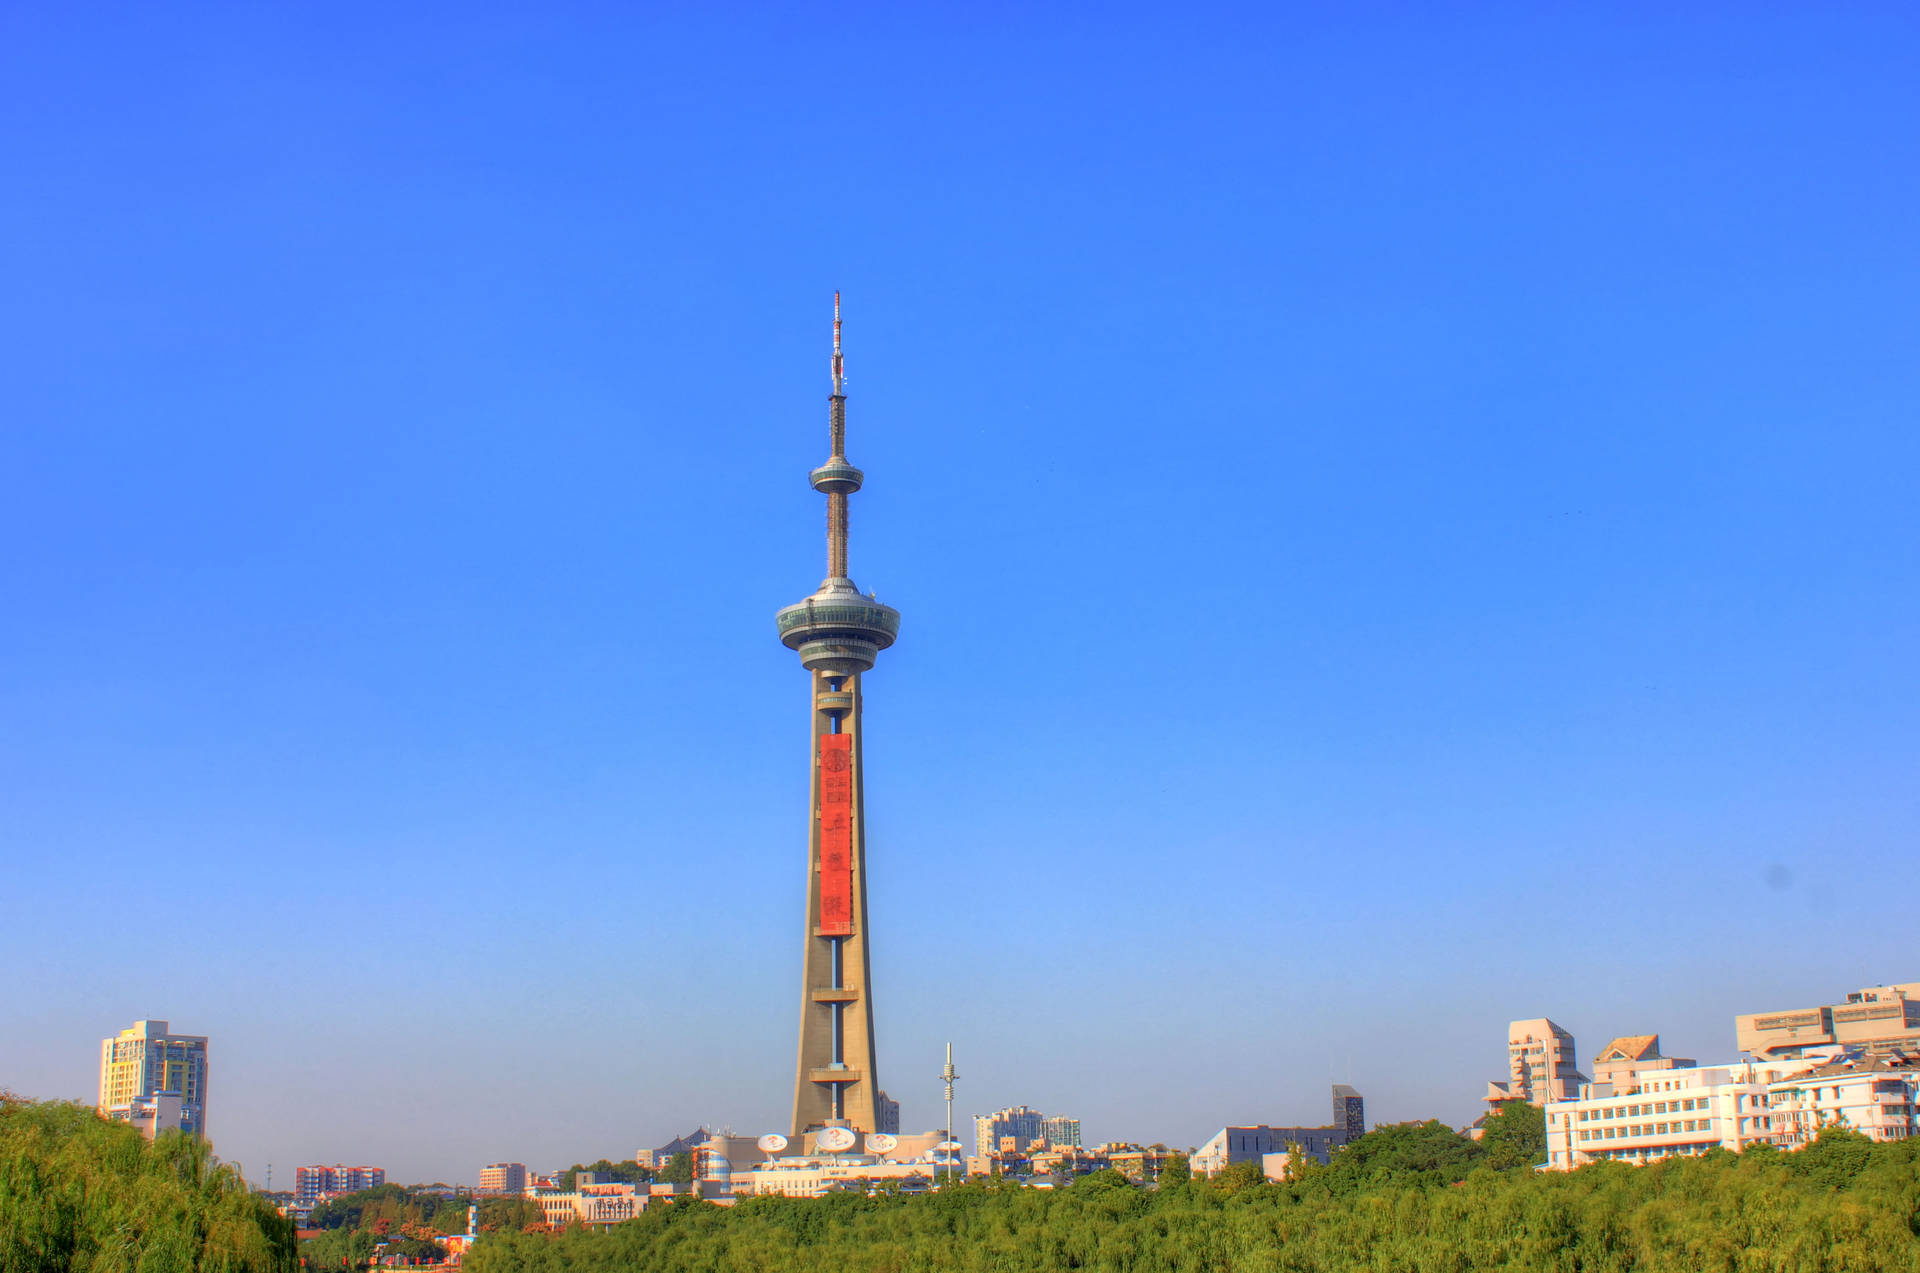 Nanjing Tv Tower